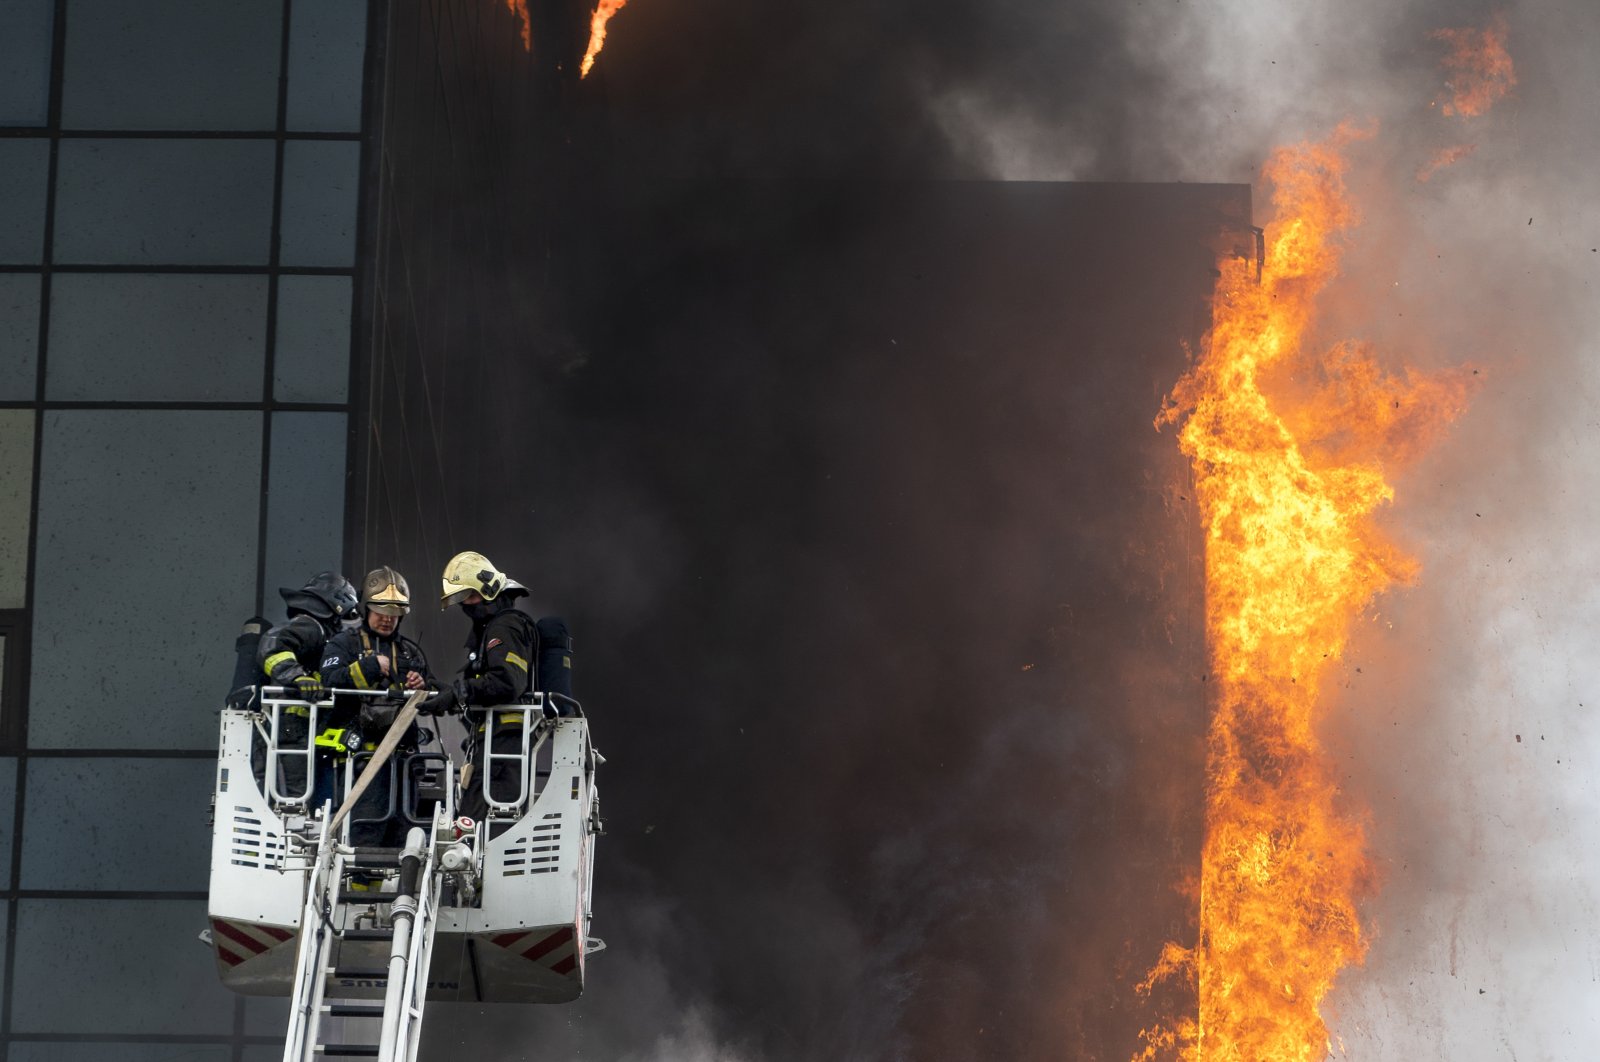 Kebakaran melanda pusat bisnis Moskow, setidaknya 2 terluka